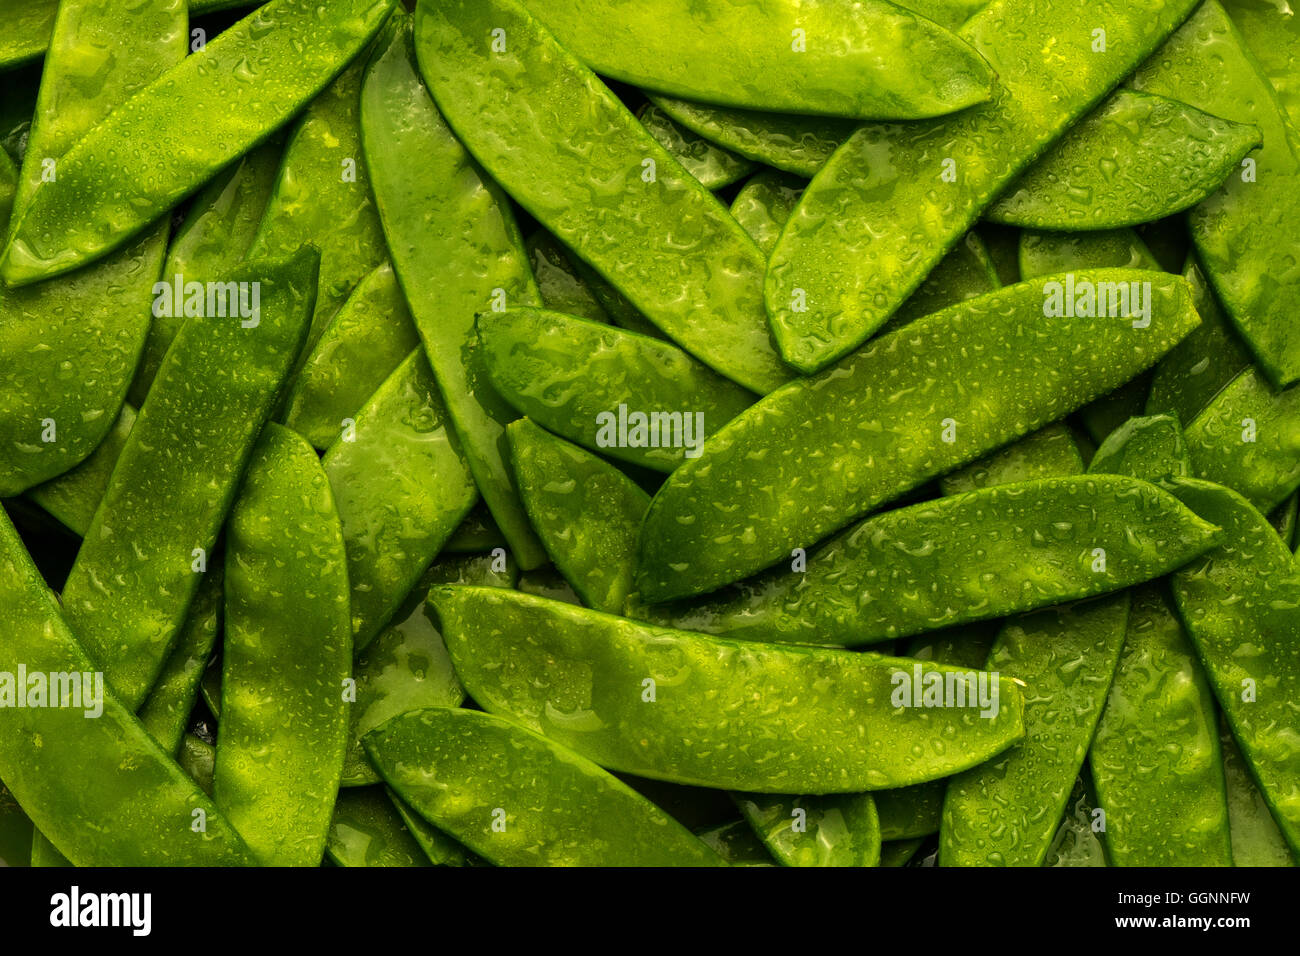 Haufen von nassen grünen Erbsen in Hülsen Stockfoto